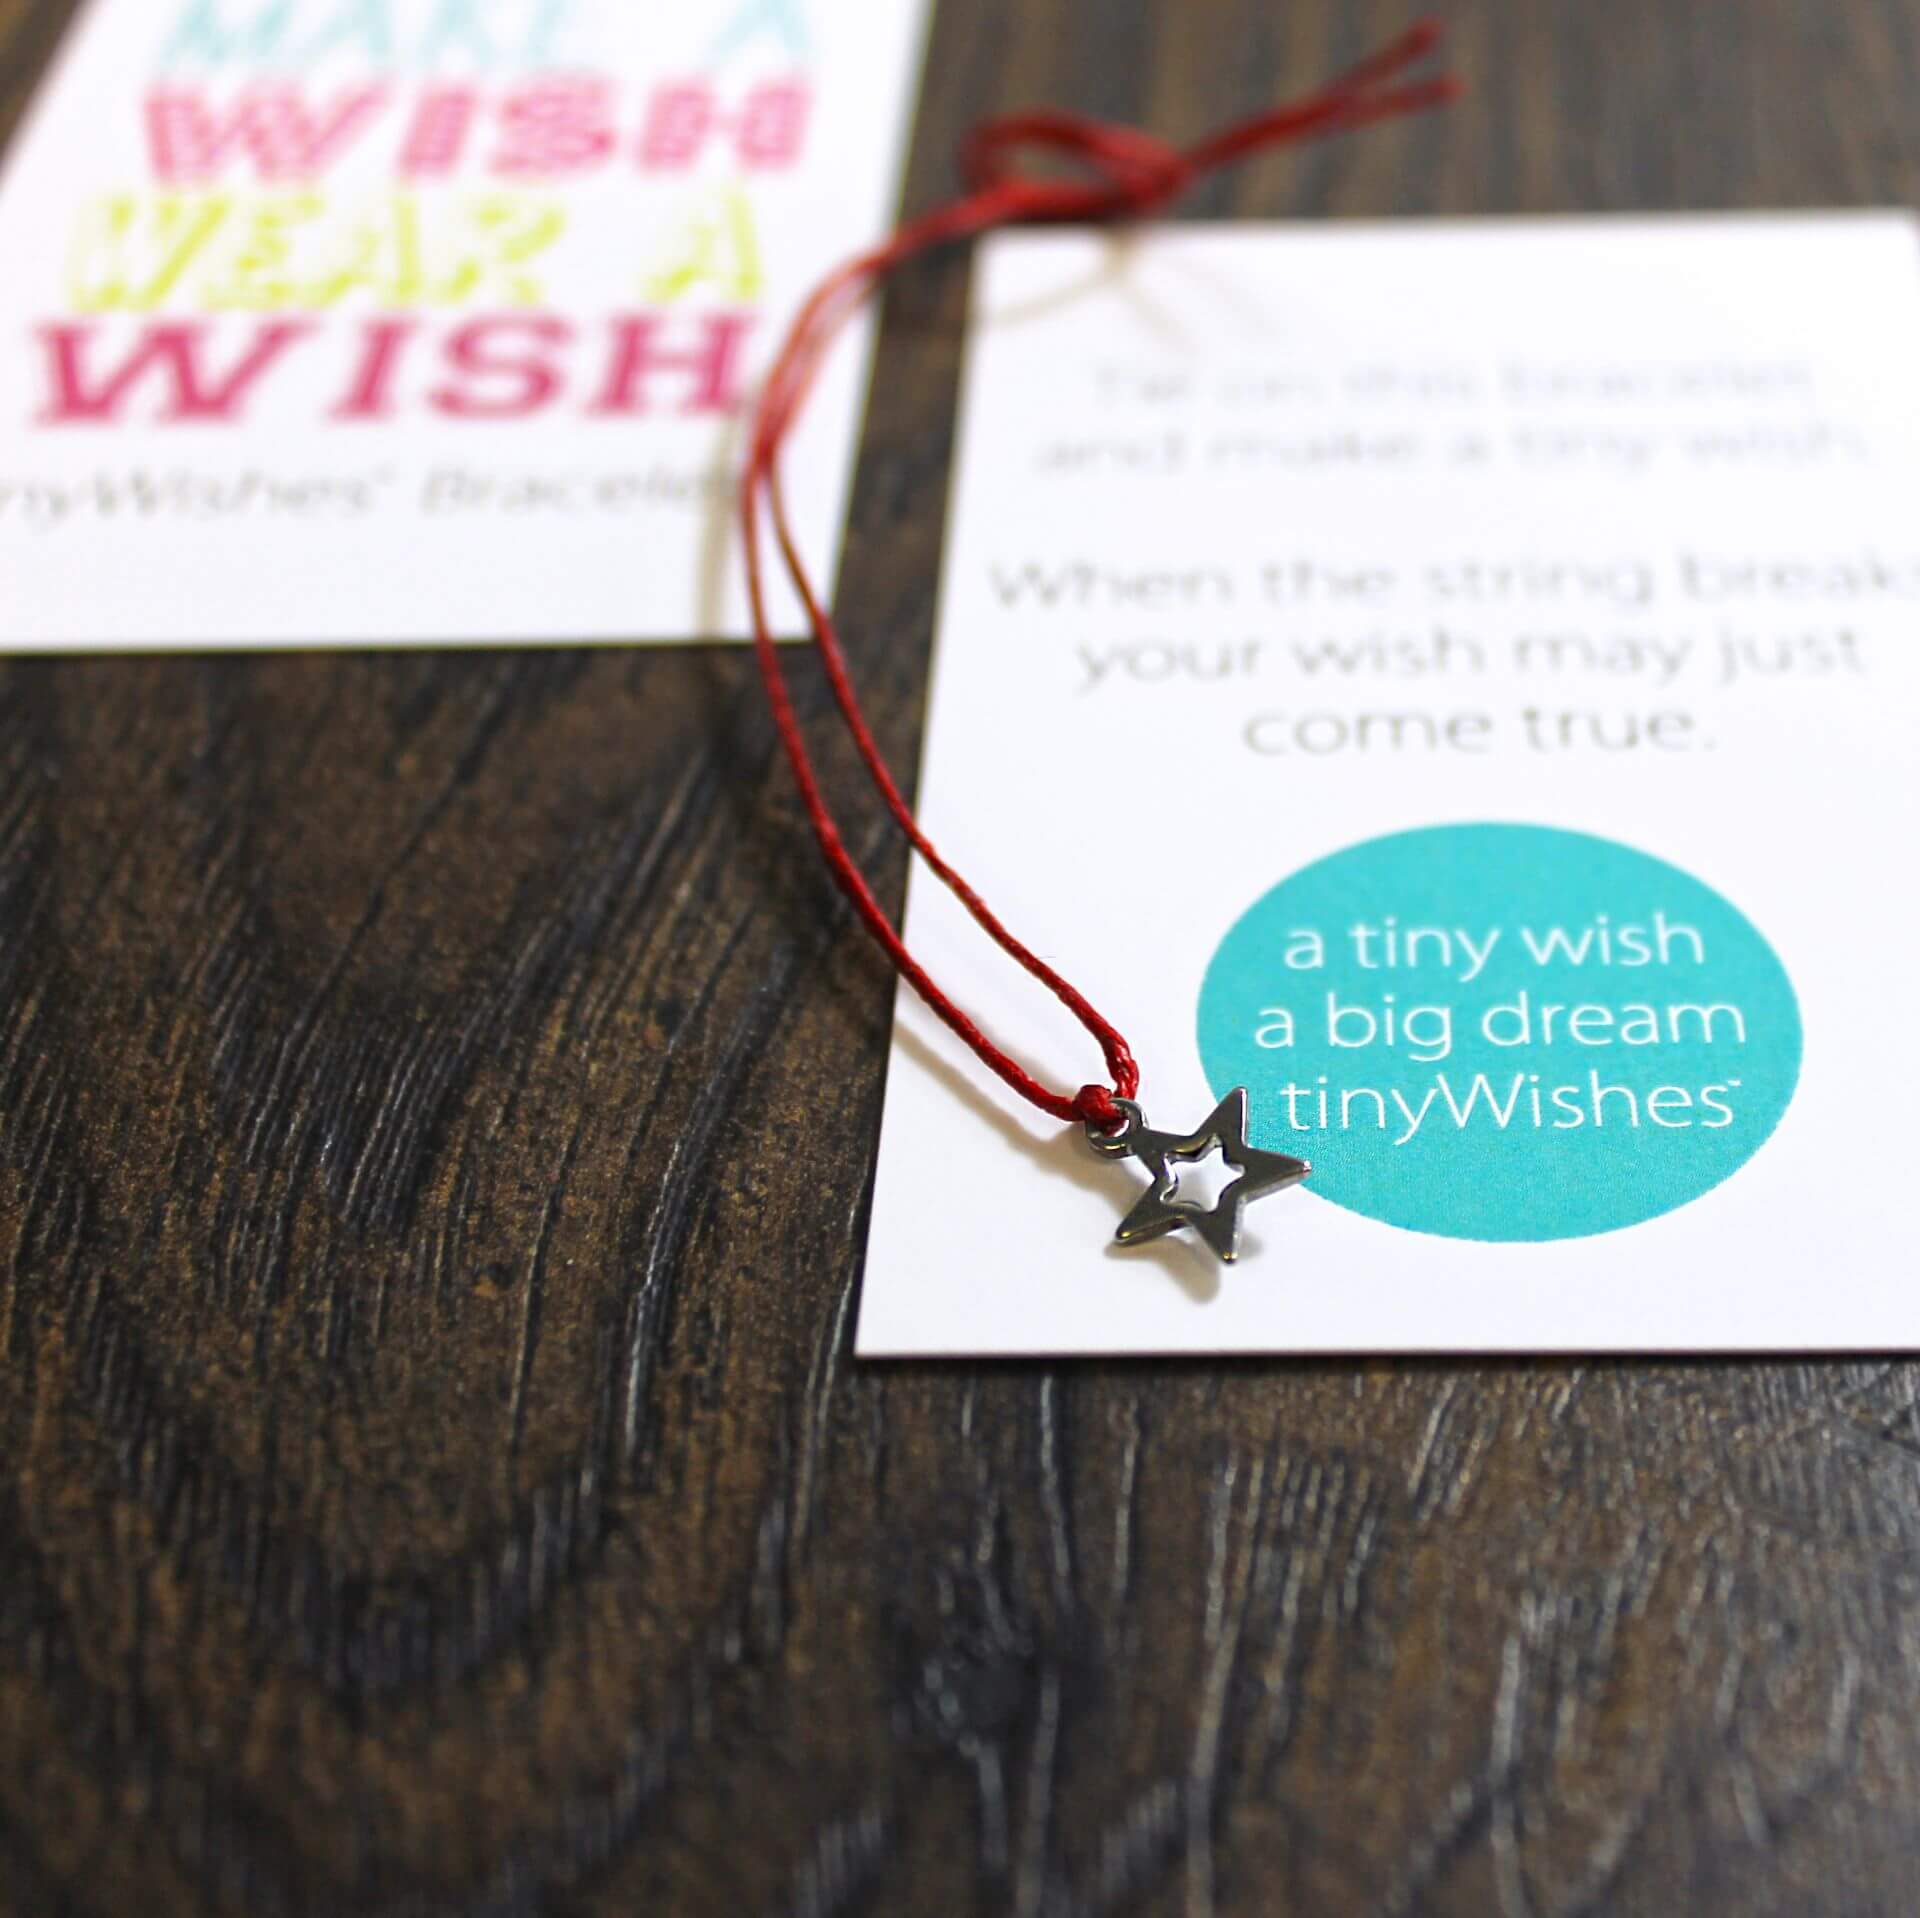 'Make a Wish' Star Charm Wish Bracelet